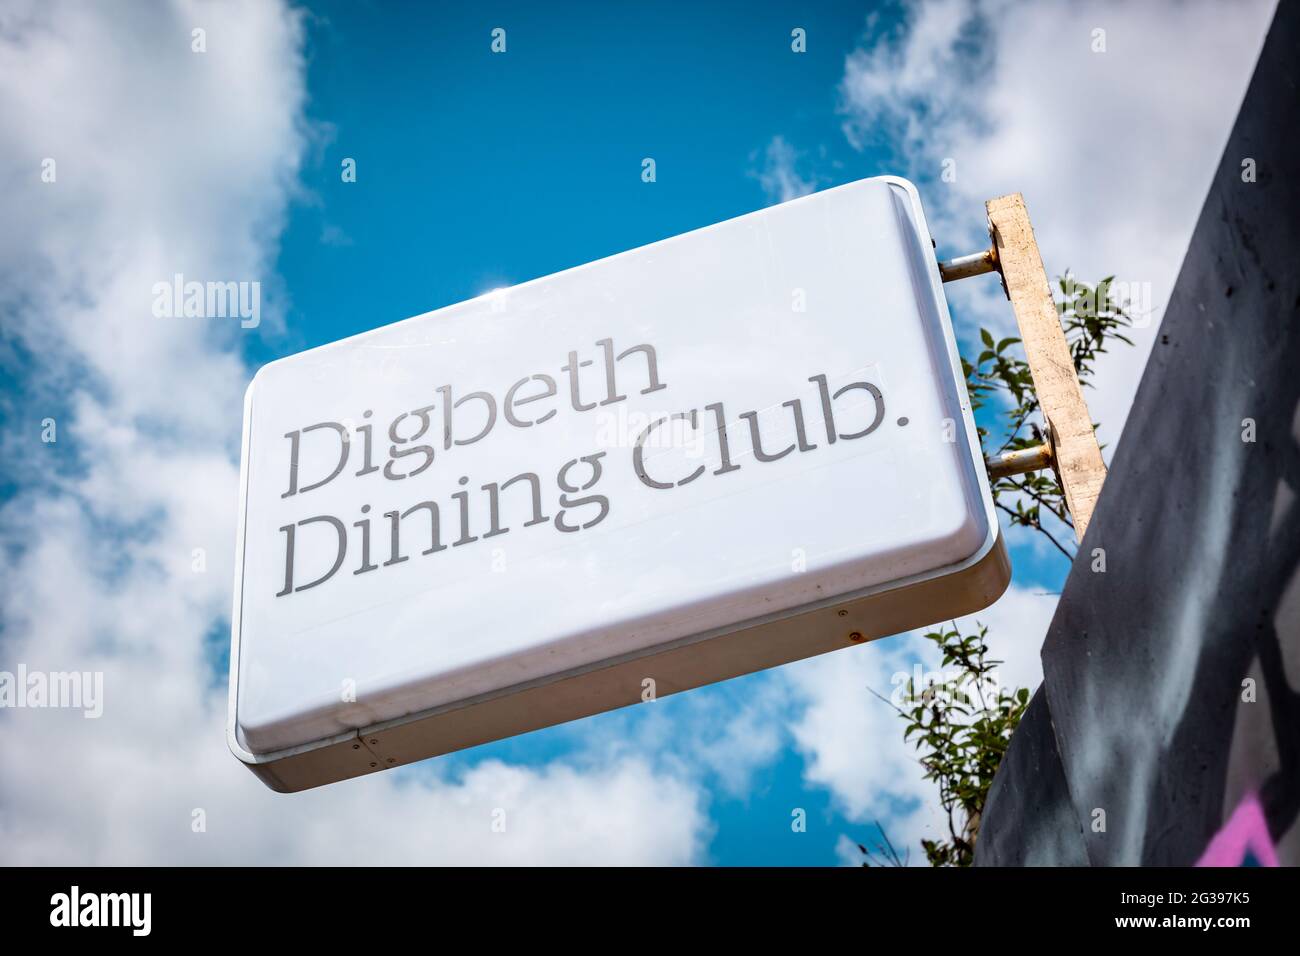 Señal diciendo Digbeth Dining club, Birmingham, Reino Unido 2021 Foto de stock